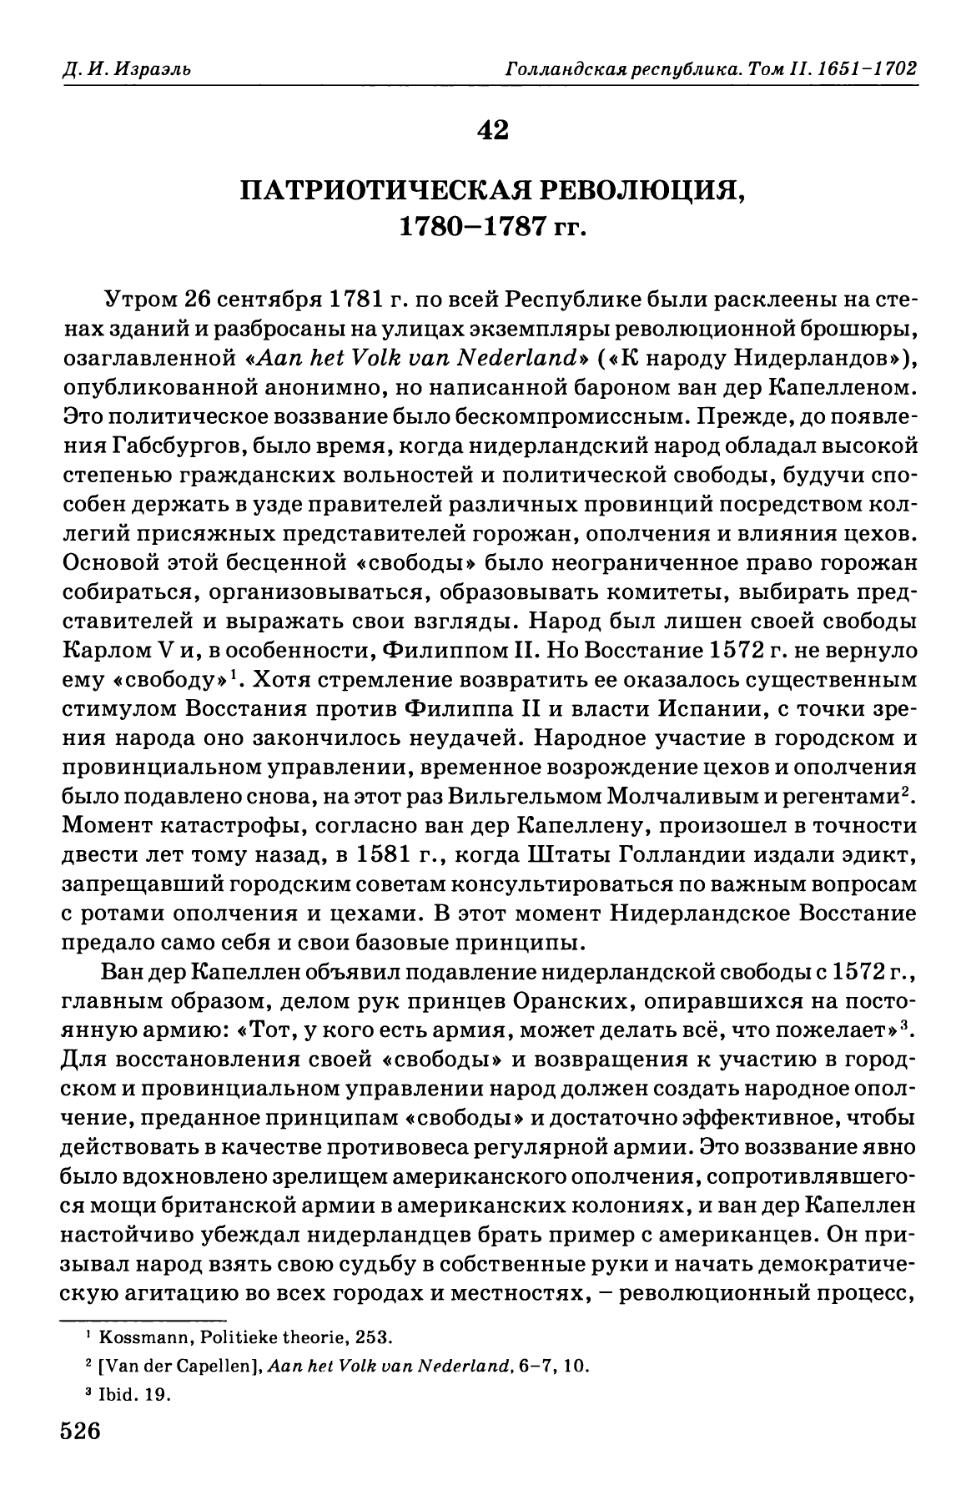 42. Патриотическая Революция, 1780-1787